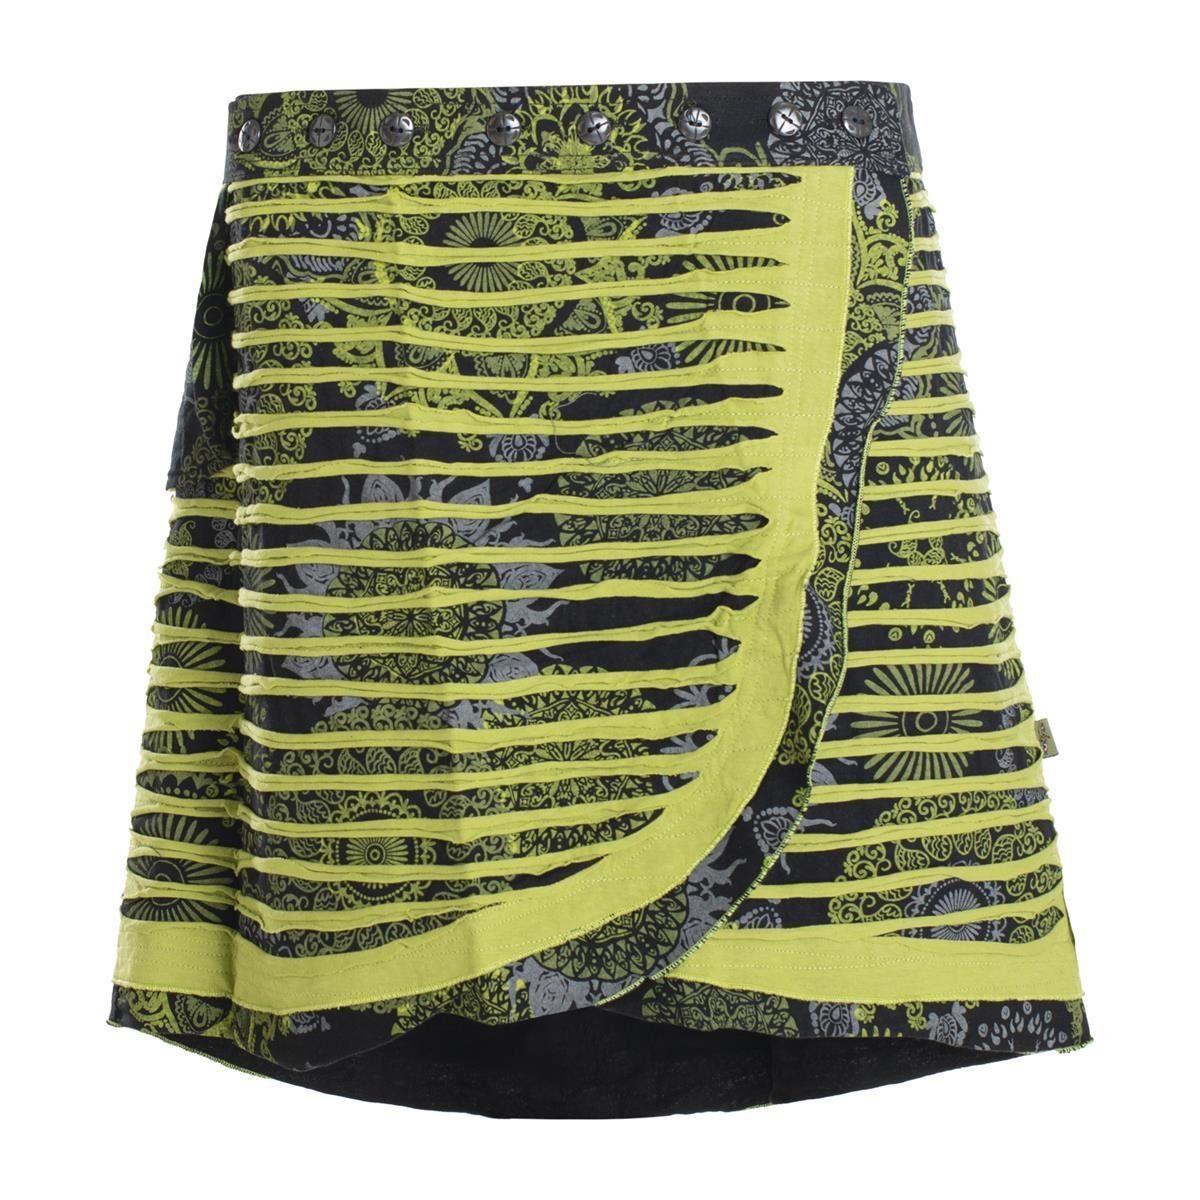 Vishes Wickelrock A Line Wickelrock Kurzrock Mini Skirt mit Knöpfen A-Linie, Ethno, Hippie Style schwarz-grün